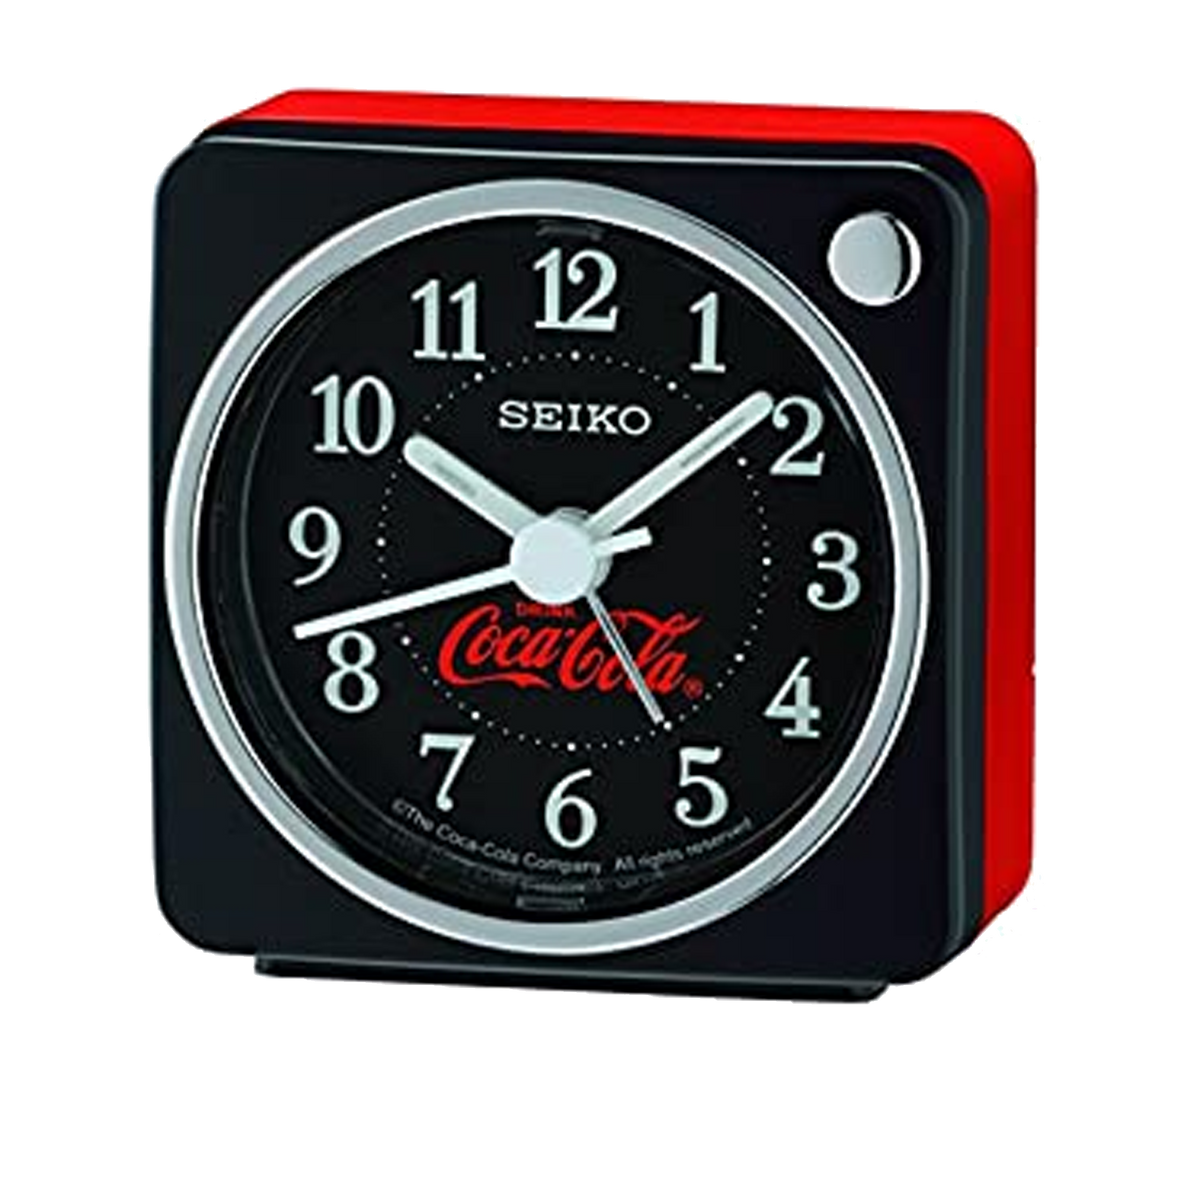 Seiko Coca Cola Clock